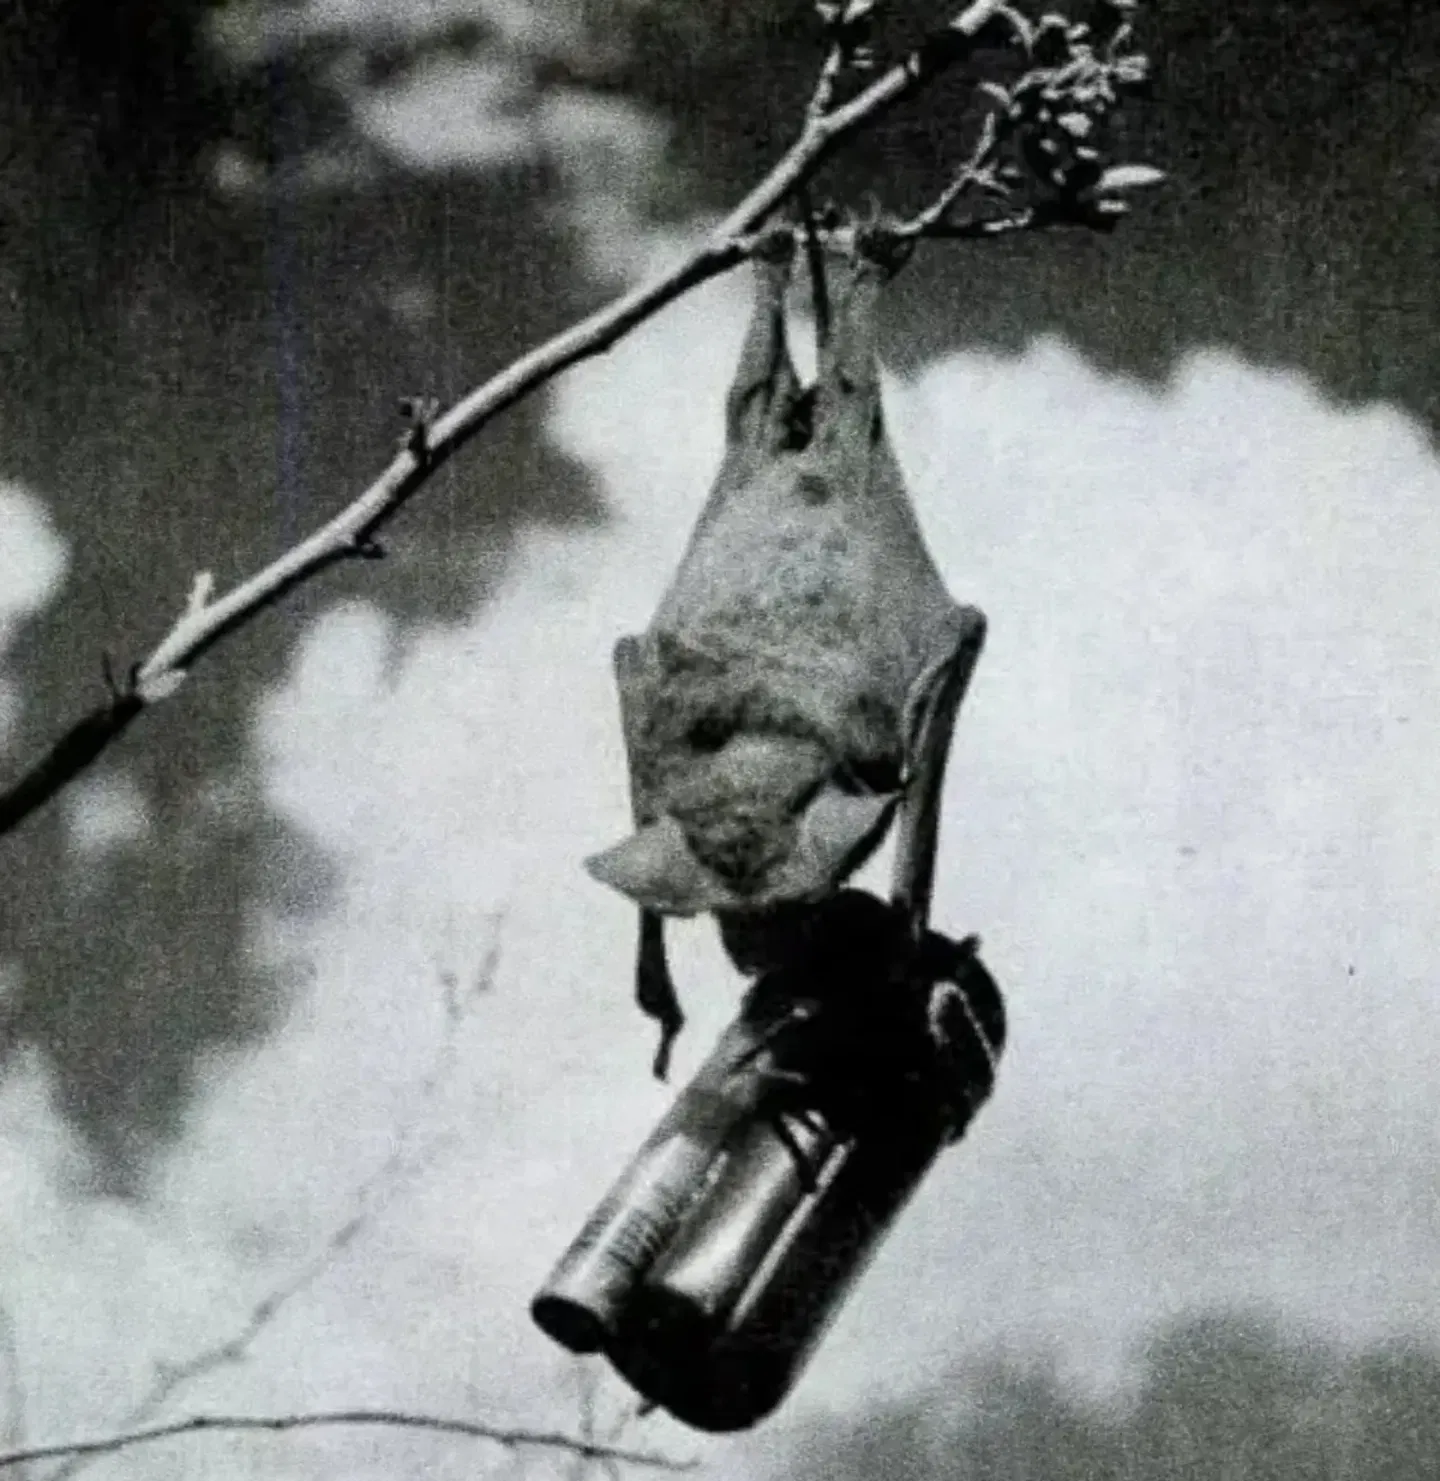 Imagen de archivo de un murciélago sujetando una bomba